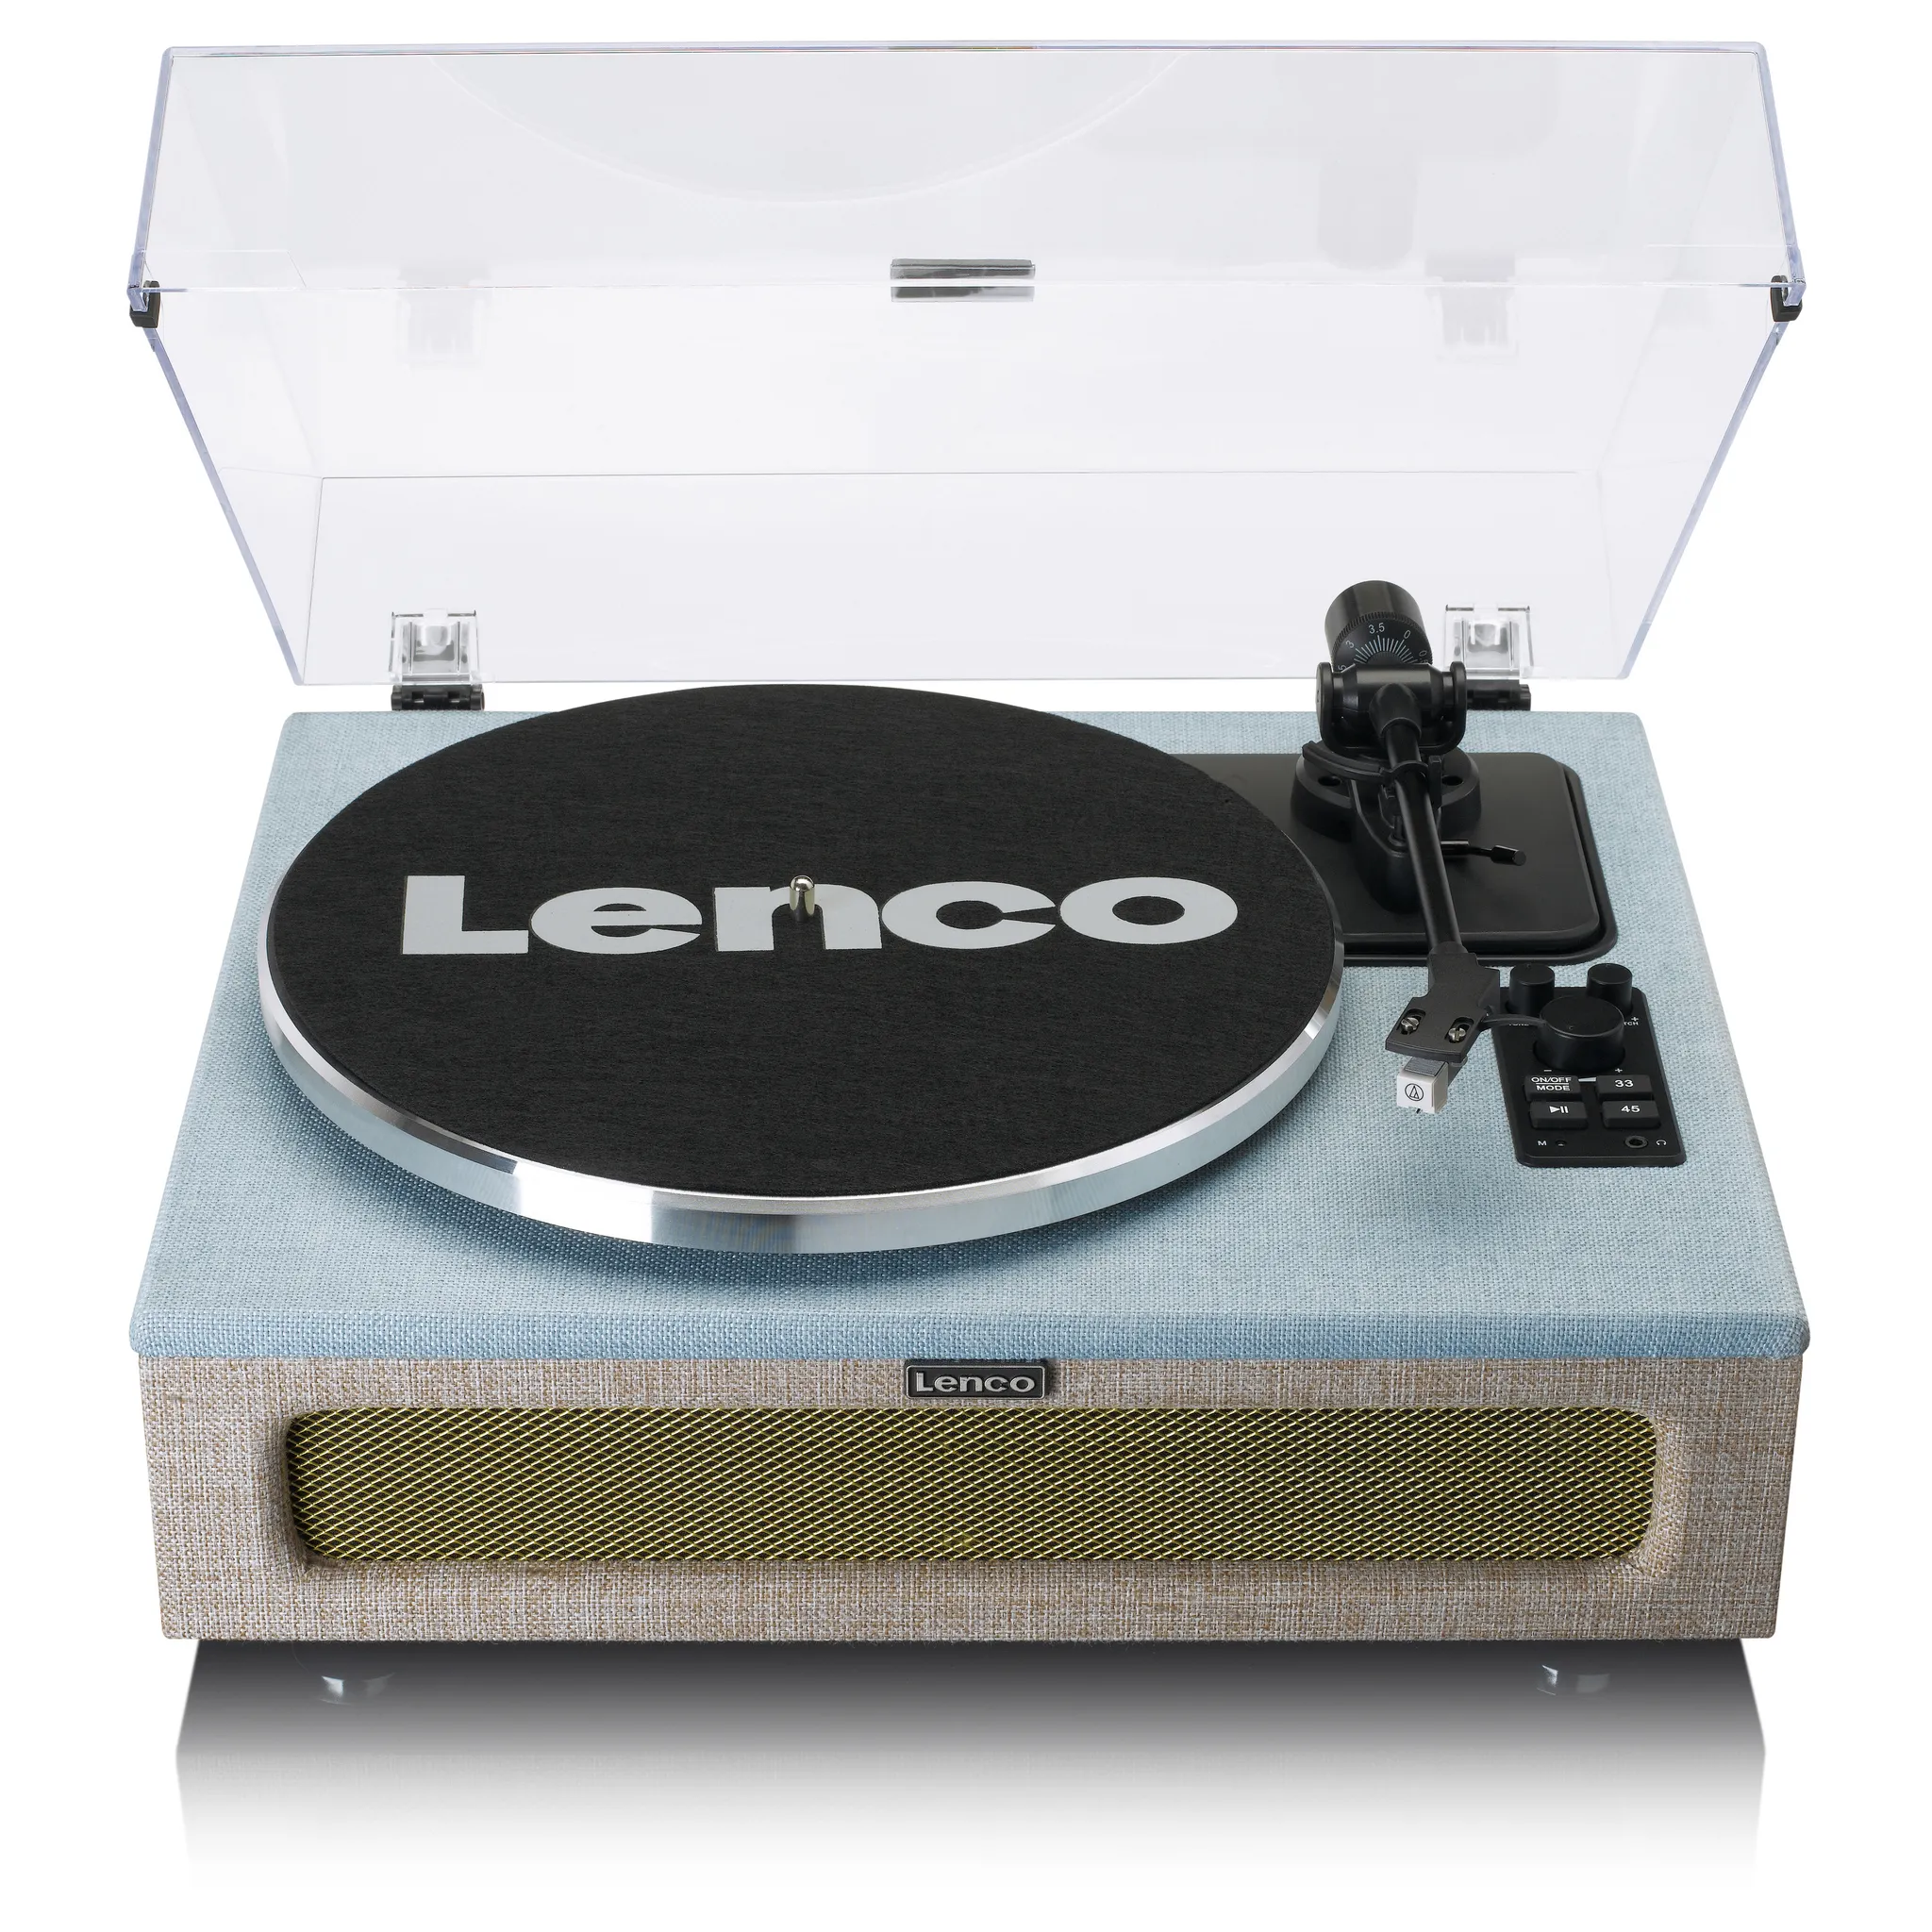 LS-440 Lenco - 4 eingebaute Plattenspieler